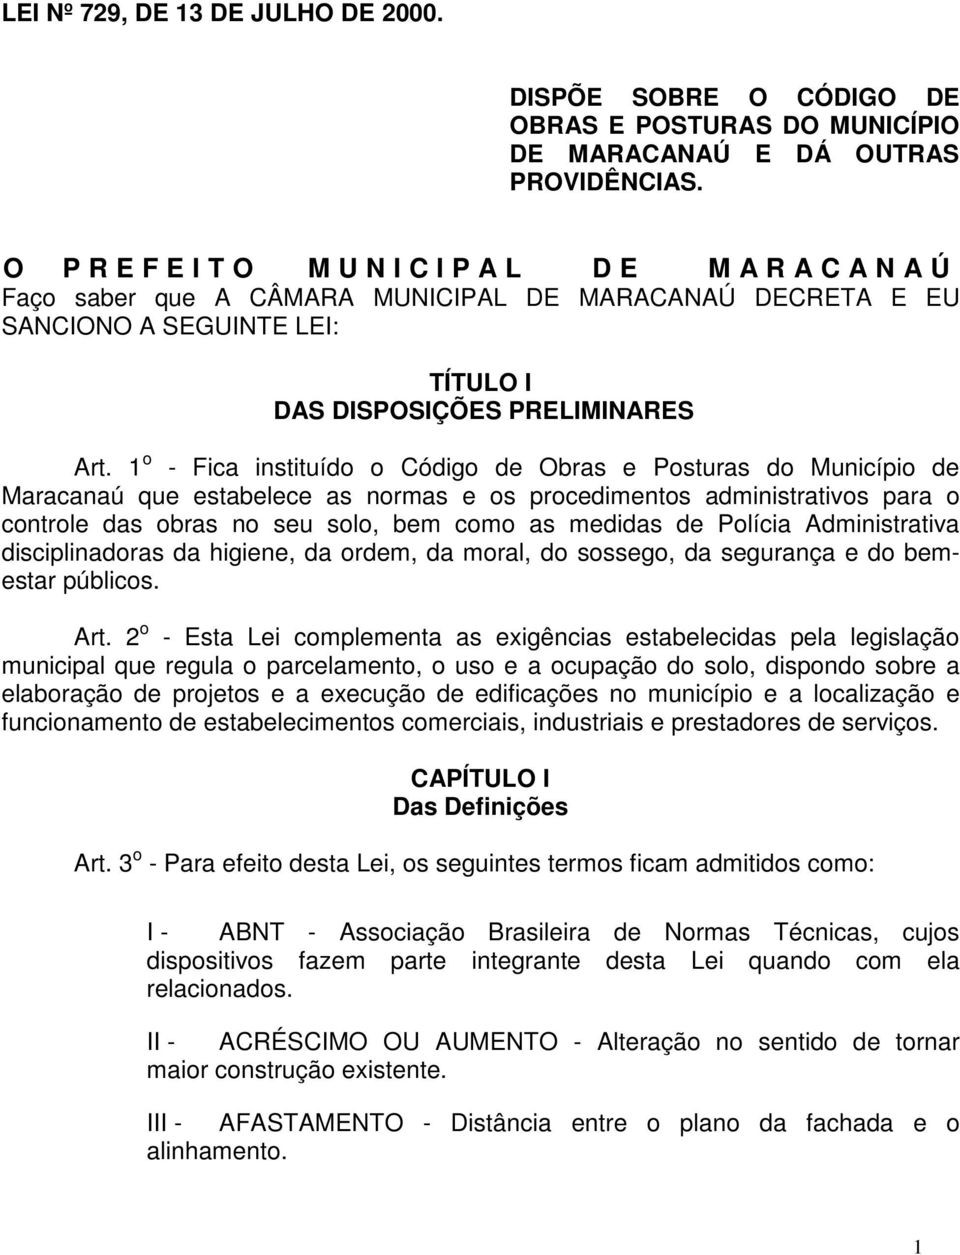 1 o - Fica instituído o Código de Obras e Posturas do Município de Maracanaú que estabelece as normas e os procedimentos administrativos para o controle das obras no seu solo, bem como as medidas de